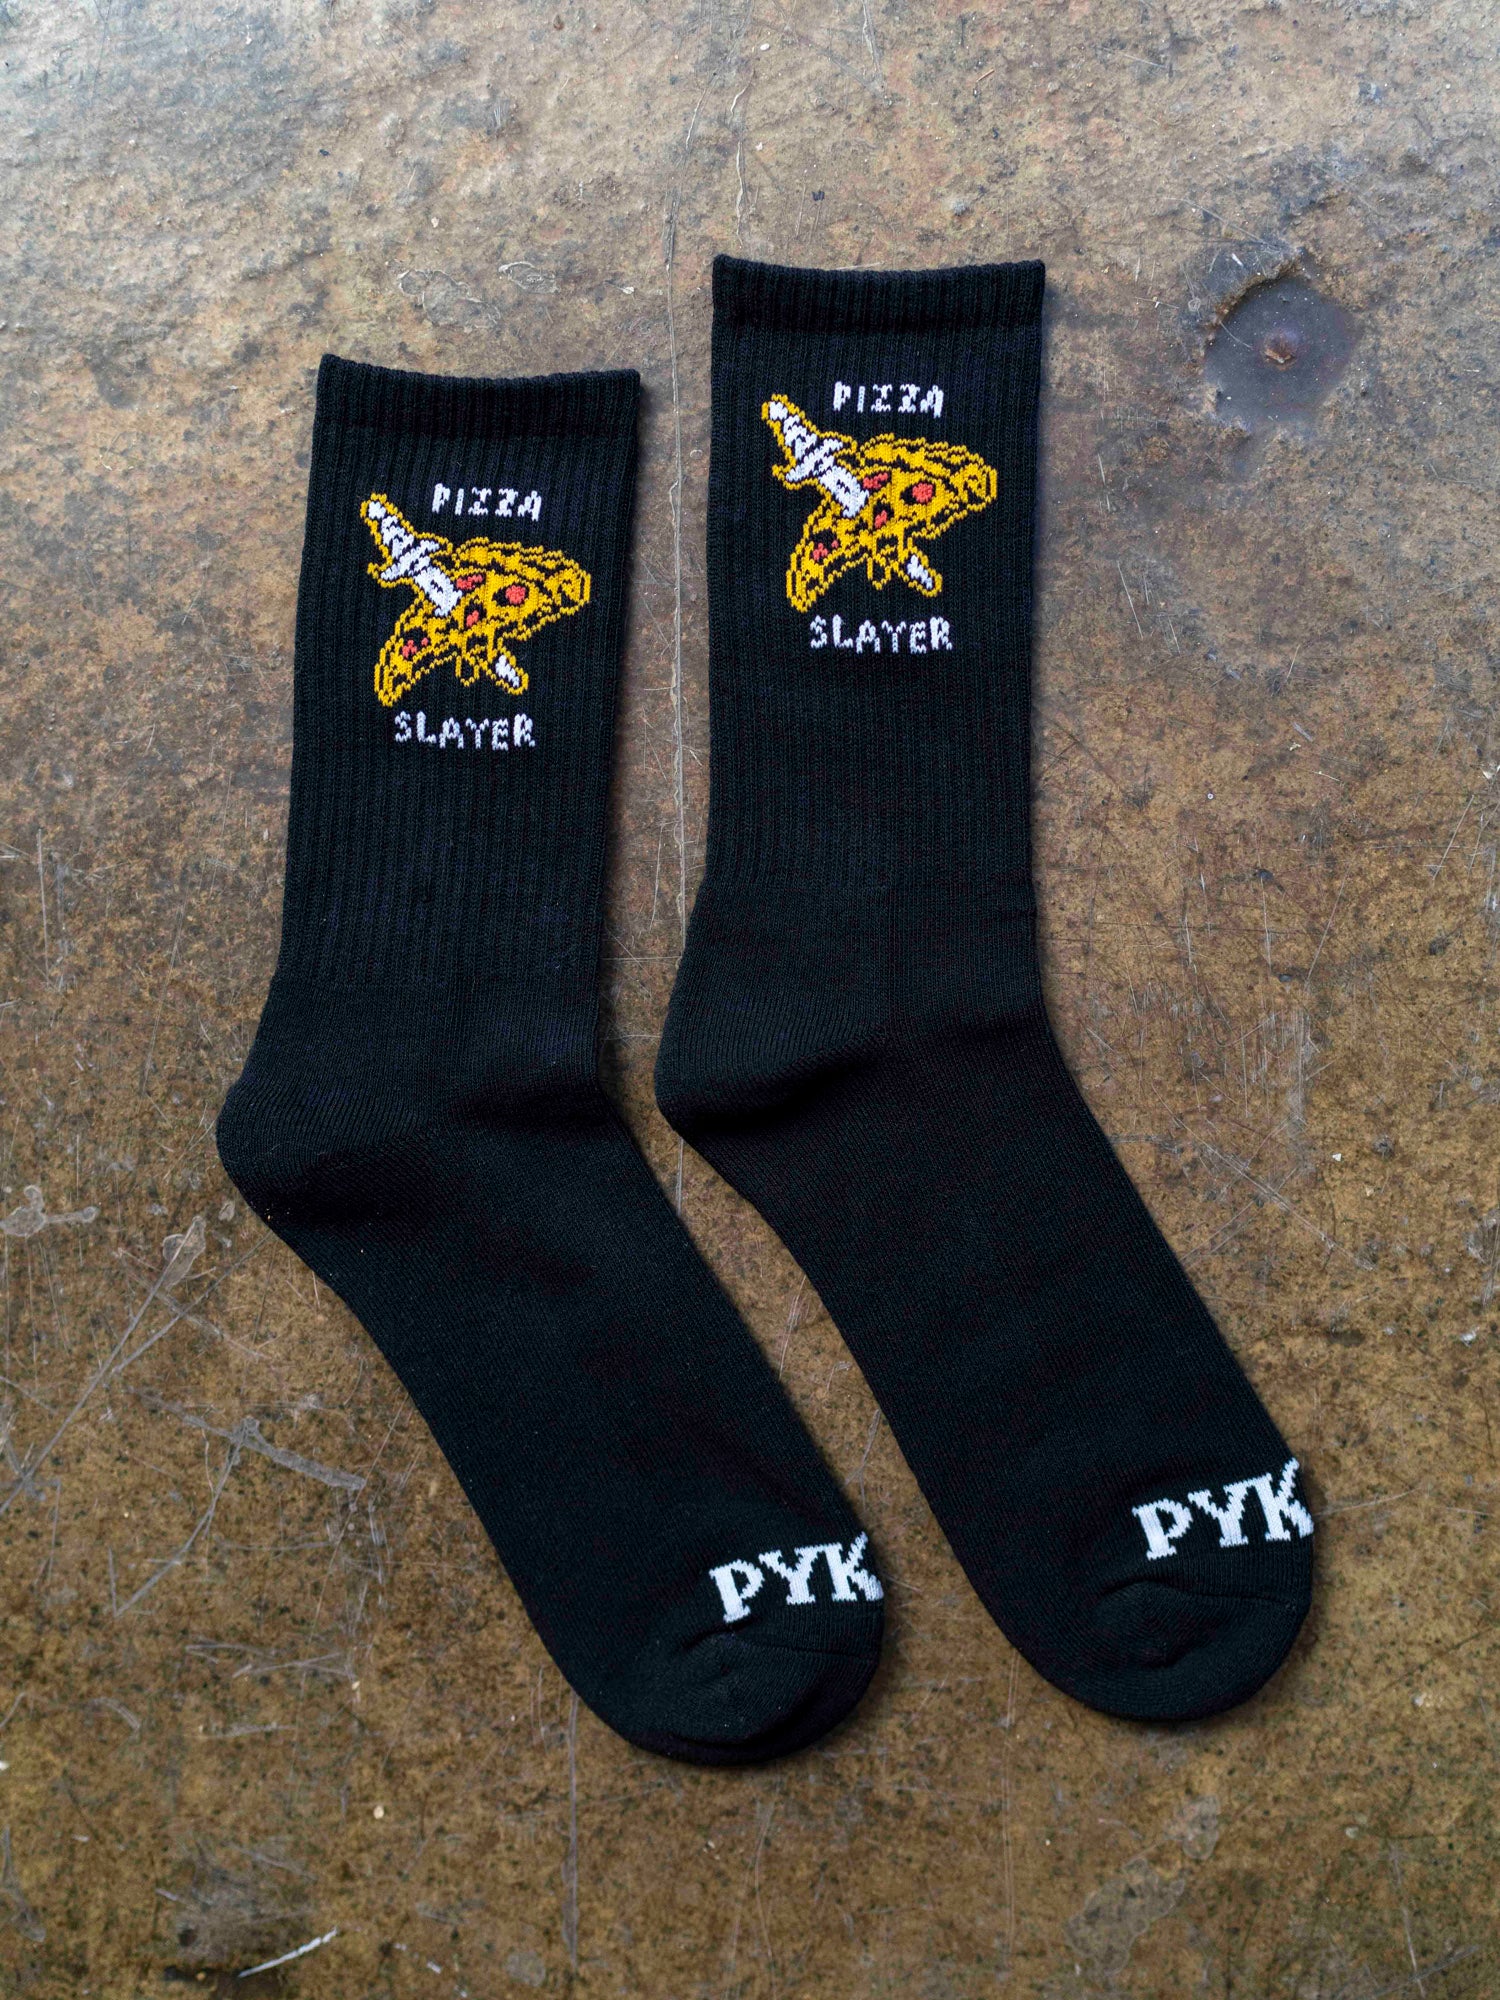 Pizza Slayer Socks